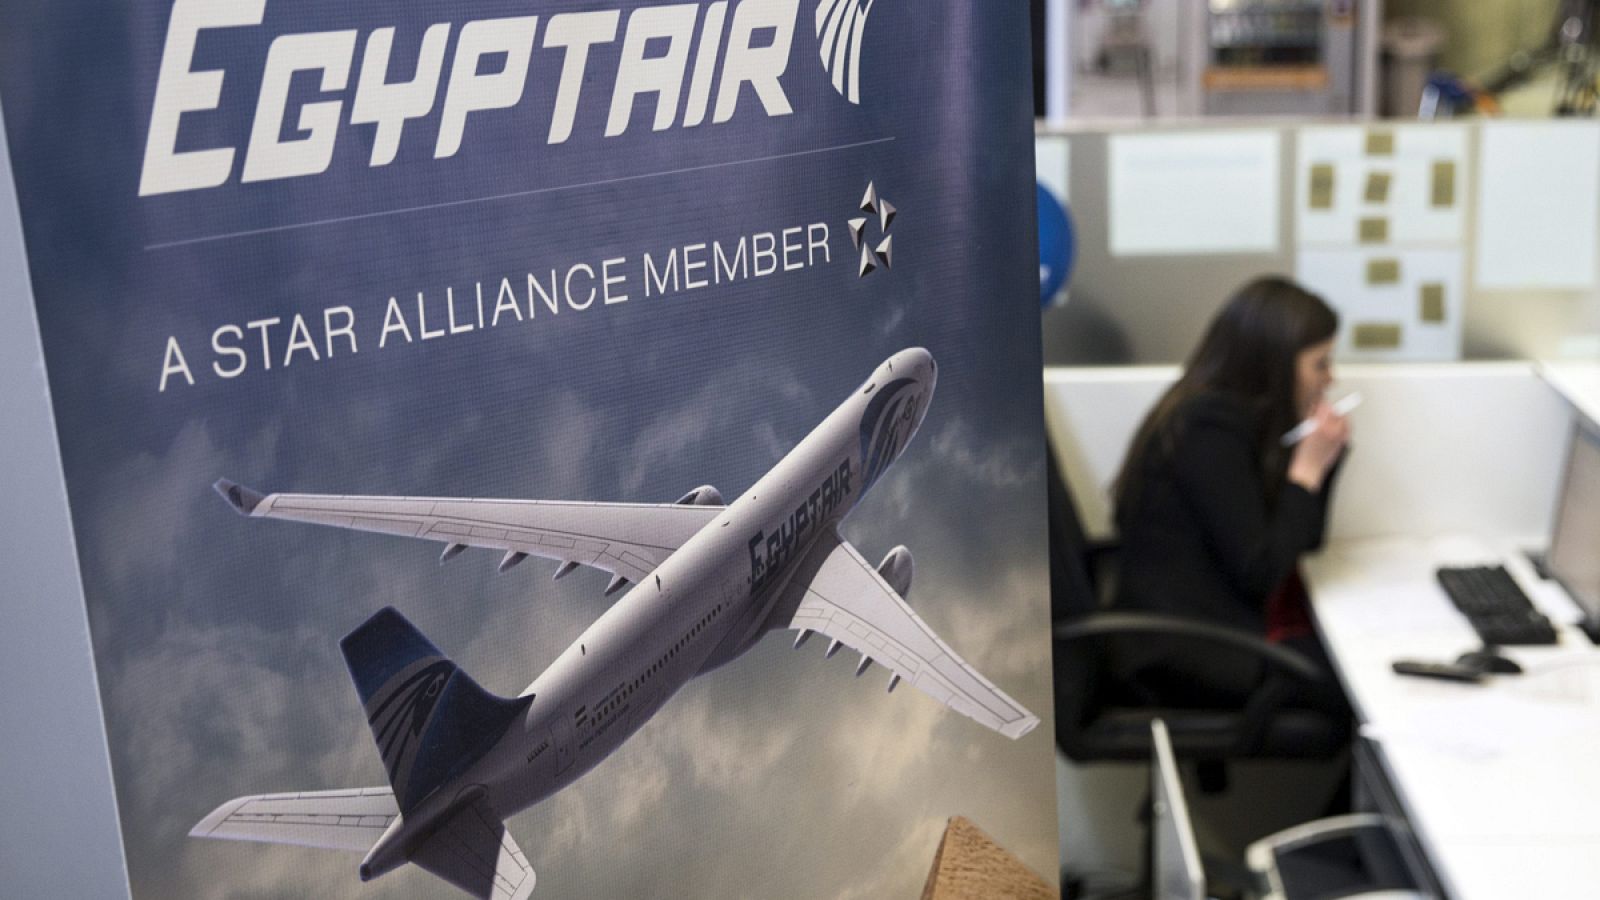 Una azafata habla junto al mostrador de la aerolínea Egyptair.